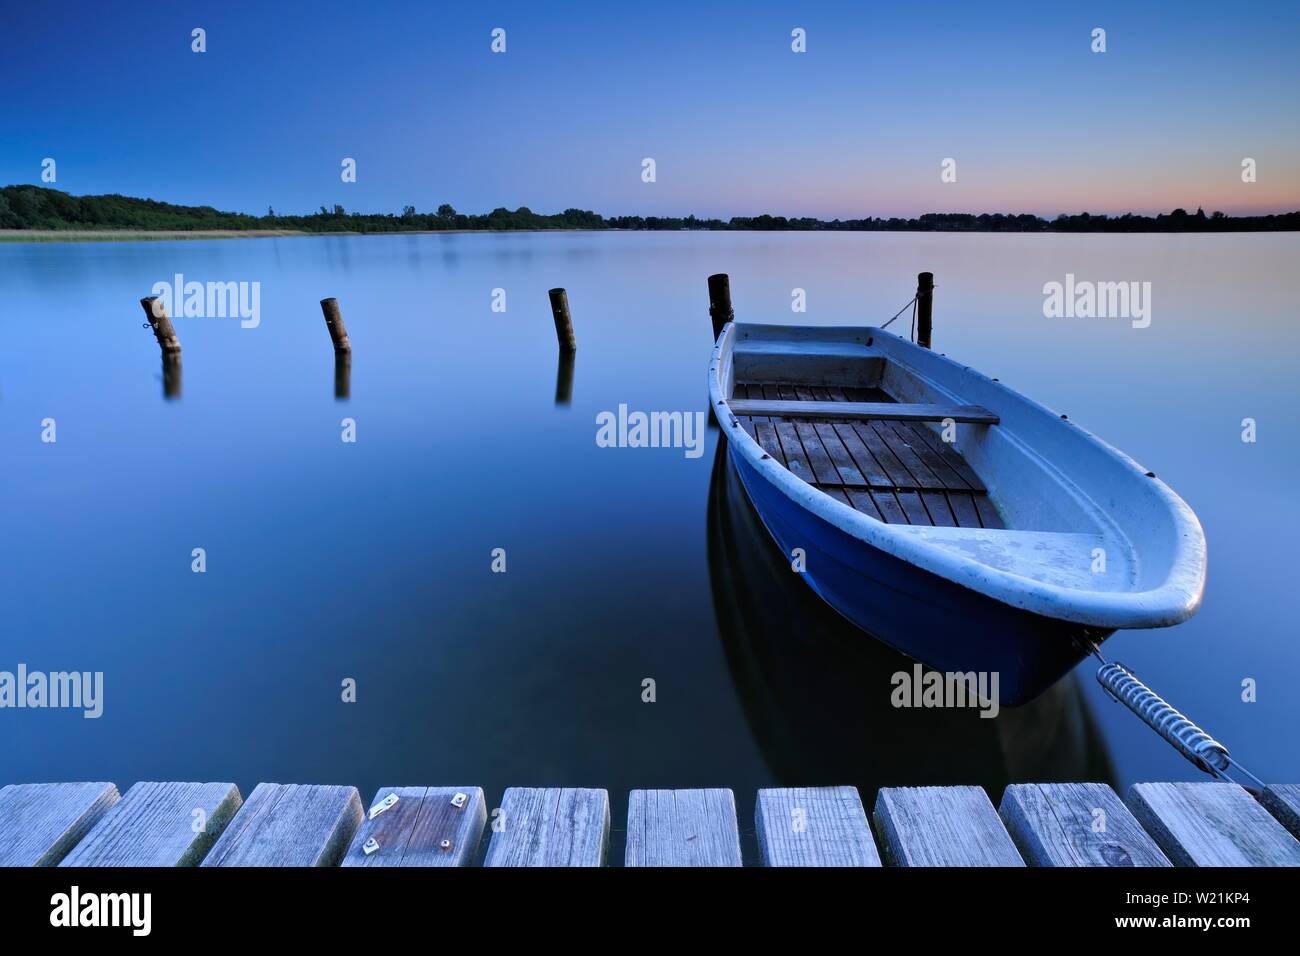 Pontile di sbarco con barca a remi, silenzioso Lago al tramonto, Lago Schaalsee, Meclemburgo-Pomerania, Germania Foto Stock